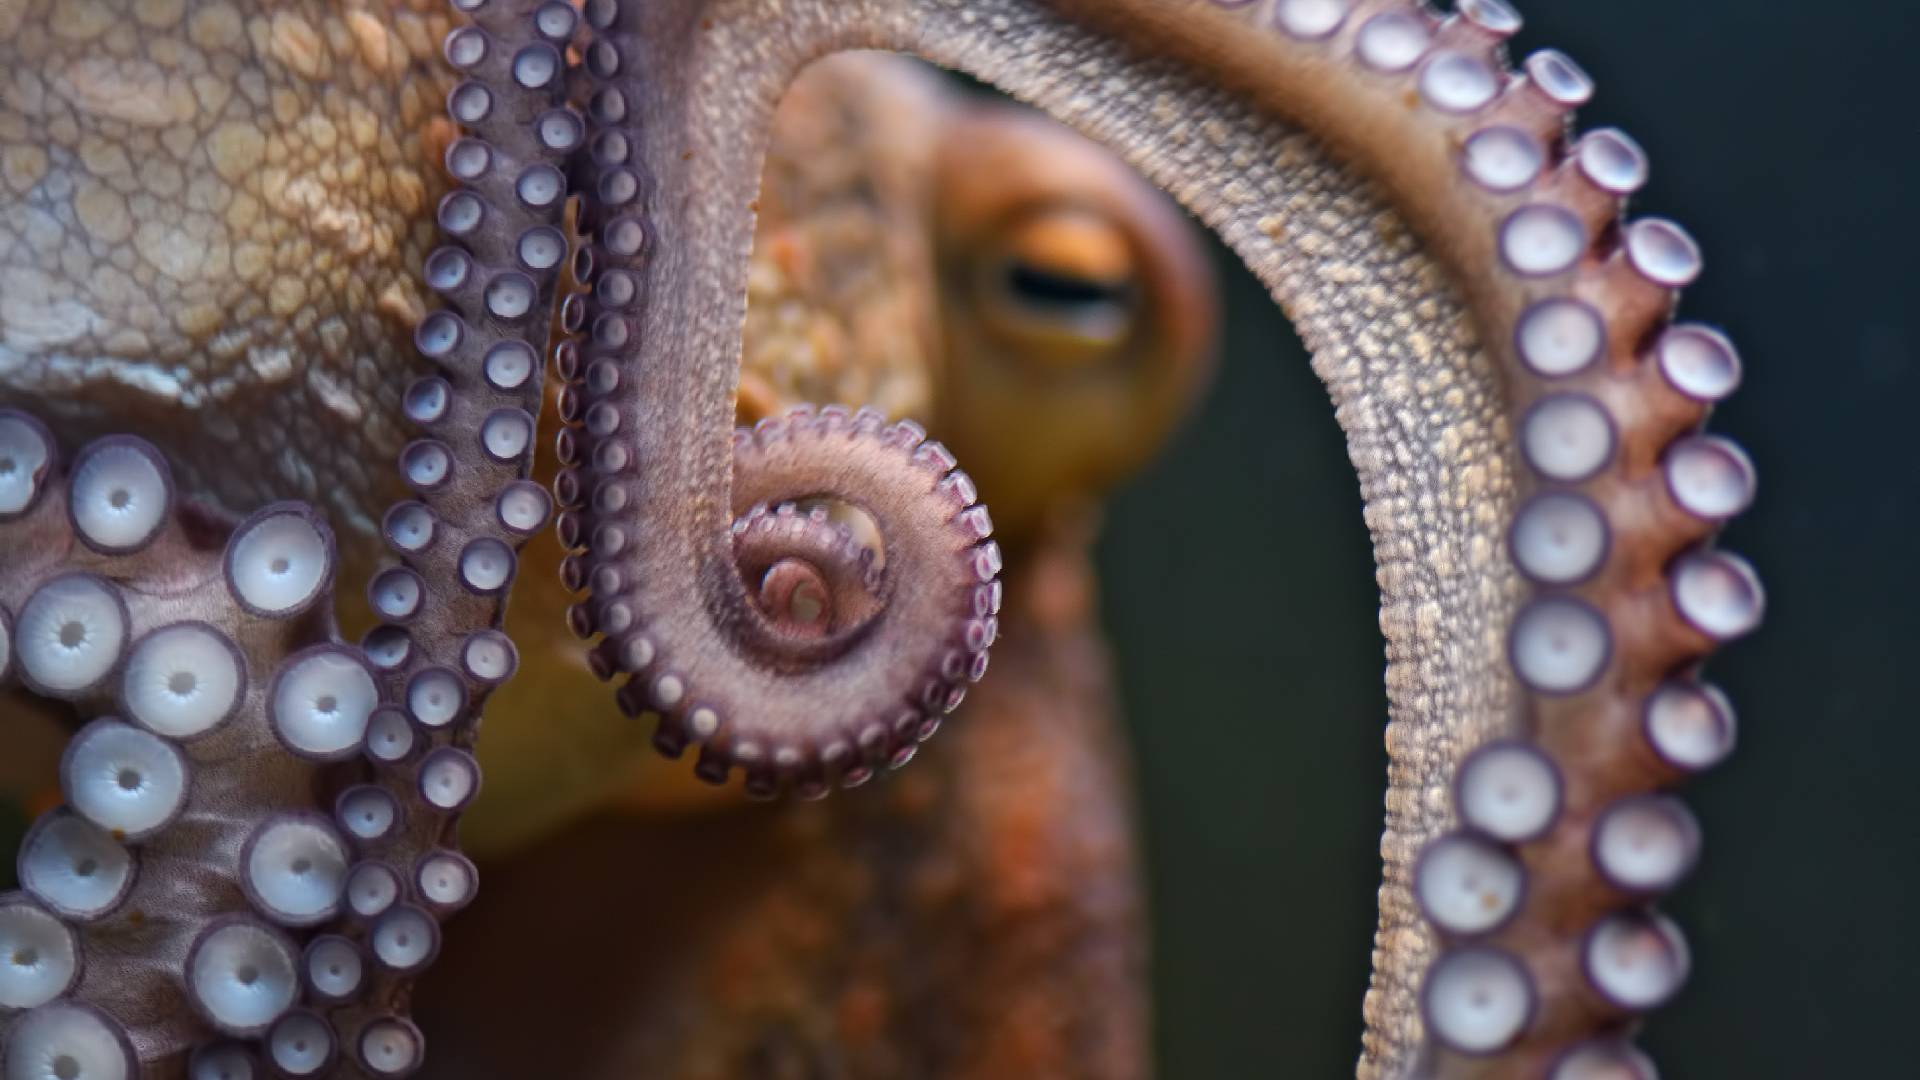 Chobotnice mají tendenci lovit naslepo a strkat chapadla do děr a štěrbin